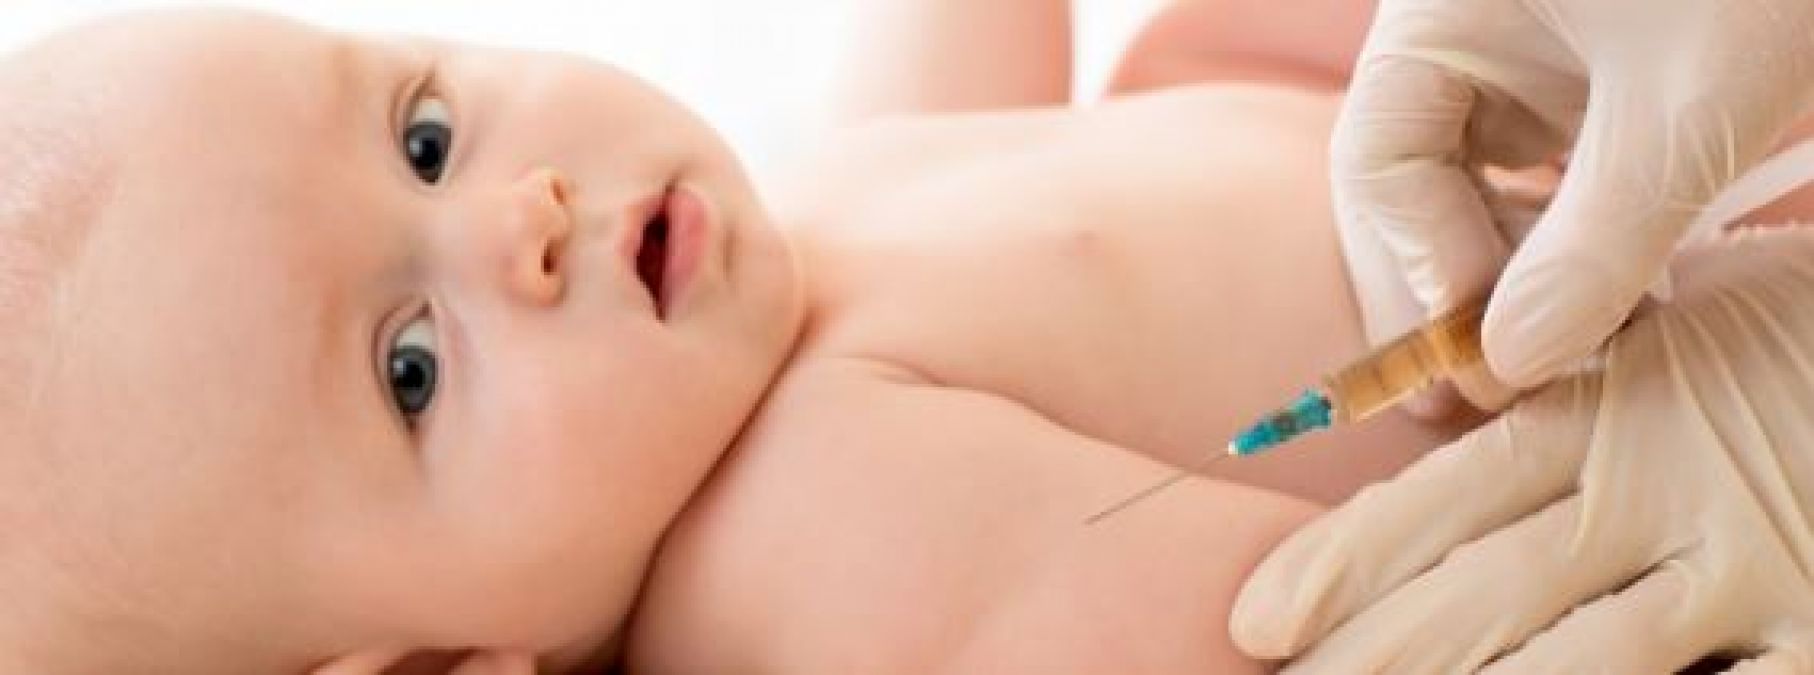 बच्चे को लगवाया है वैक्सीन तो दर्द कम करने के लिए अपनाए ये टिप्स